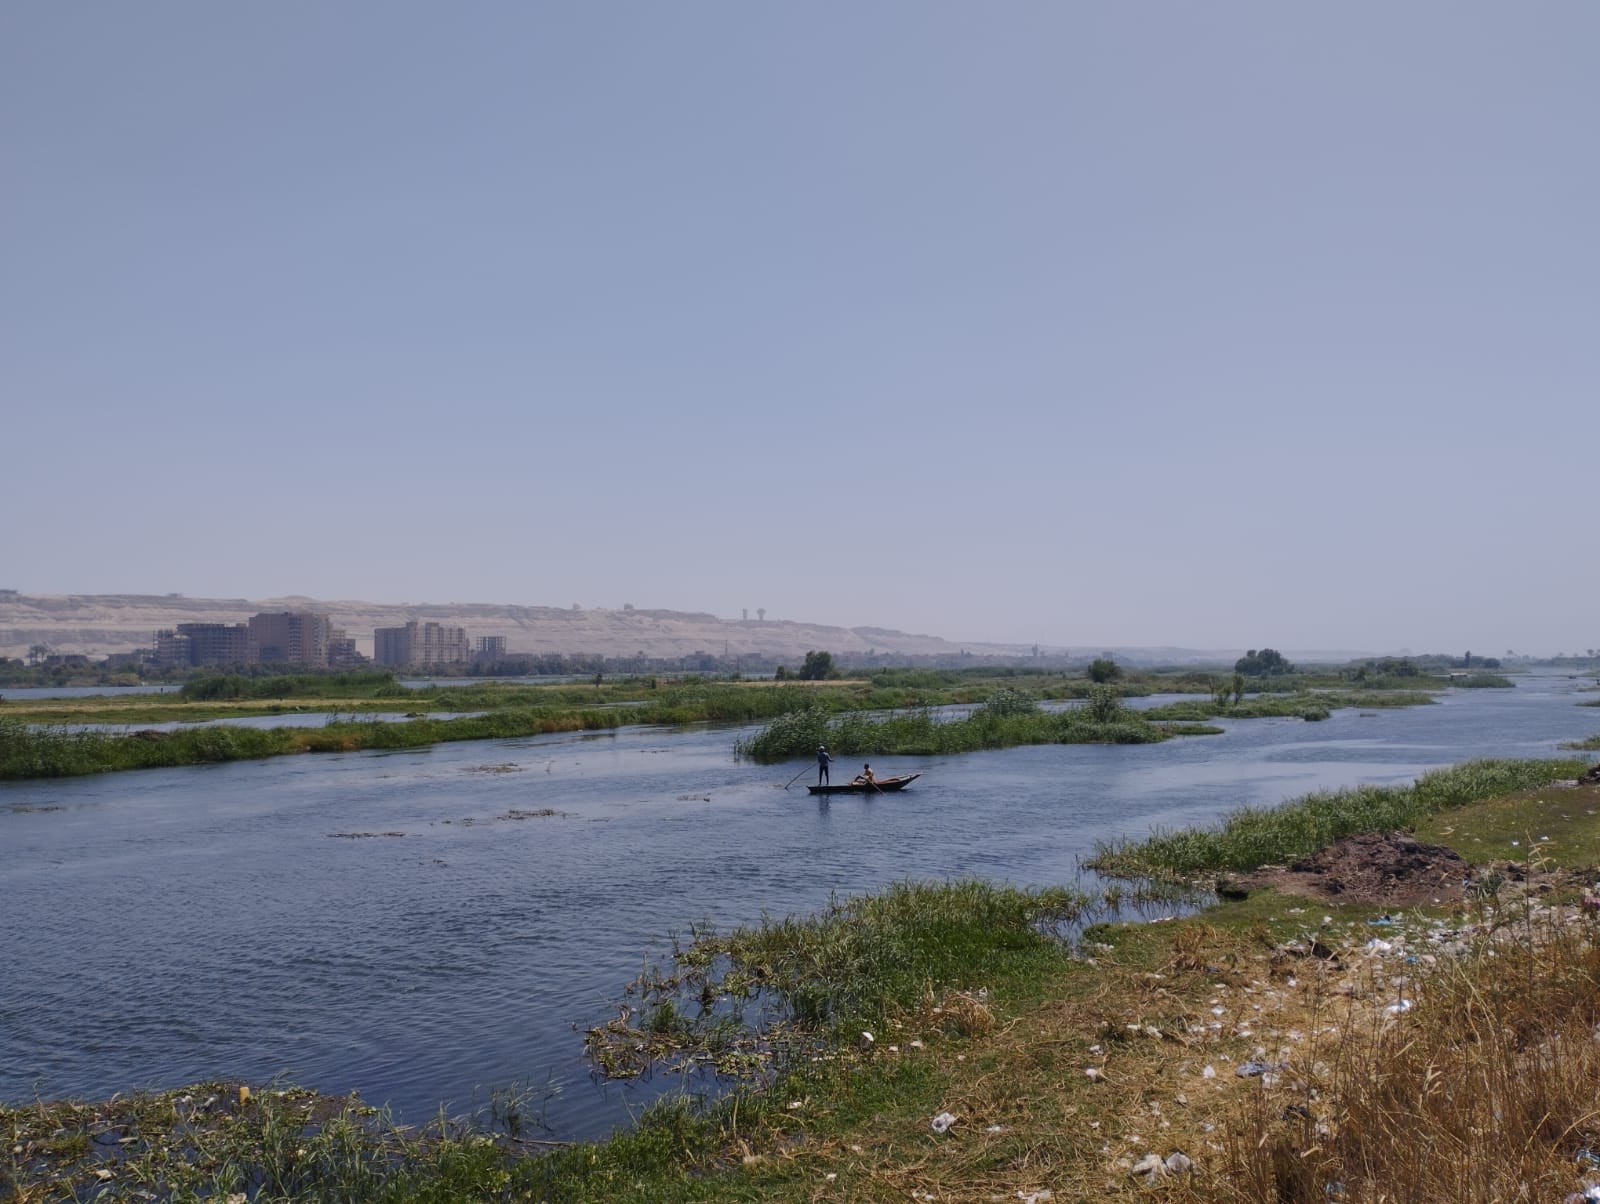  الصيادون ينطلقون بمراكب الصيد فى عرض النيل (4)